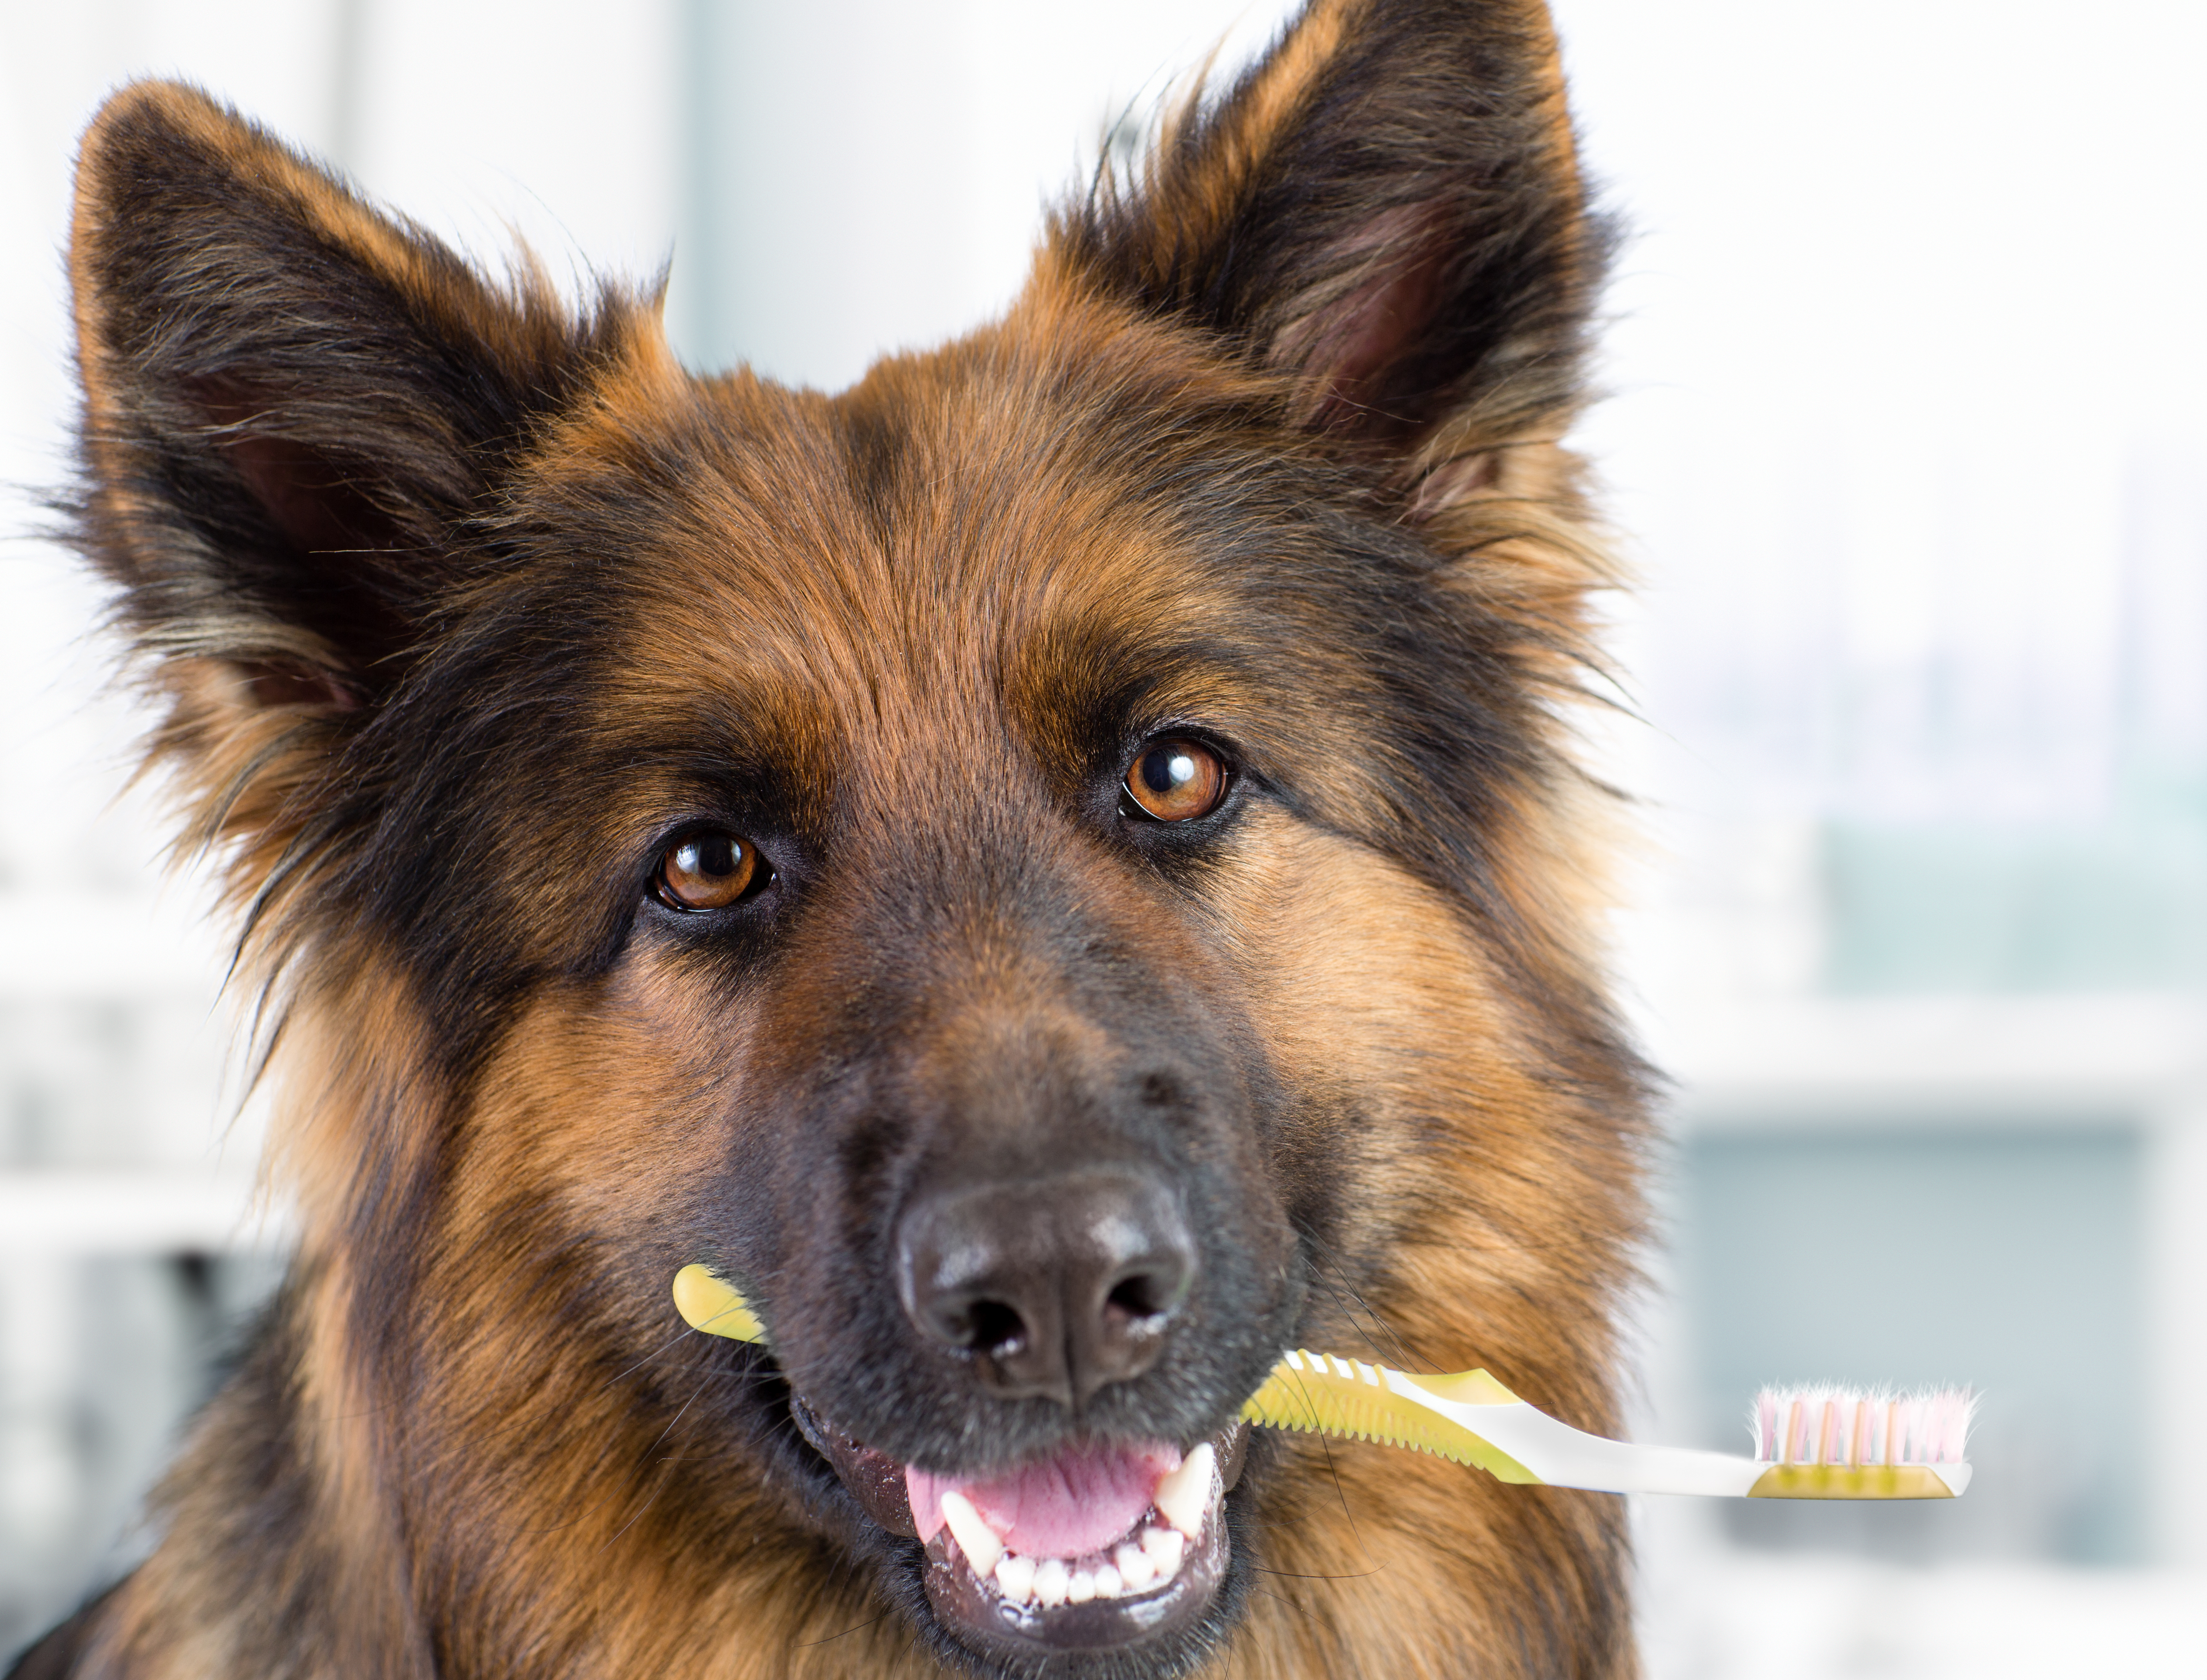 Muchos perros muestran signos de enfermedad en las encías debido a que sus dueños no le prestan la atención a su salud bucal. El mal aliento suele ser la primera señal de que algo no está bien. (Foto Prensa Libre: Shutterstock)